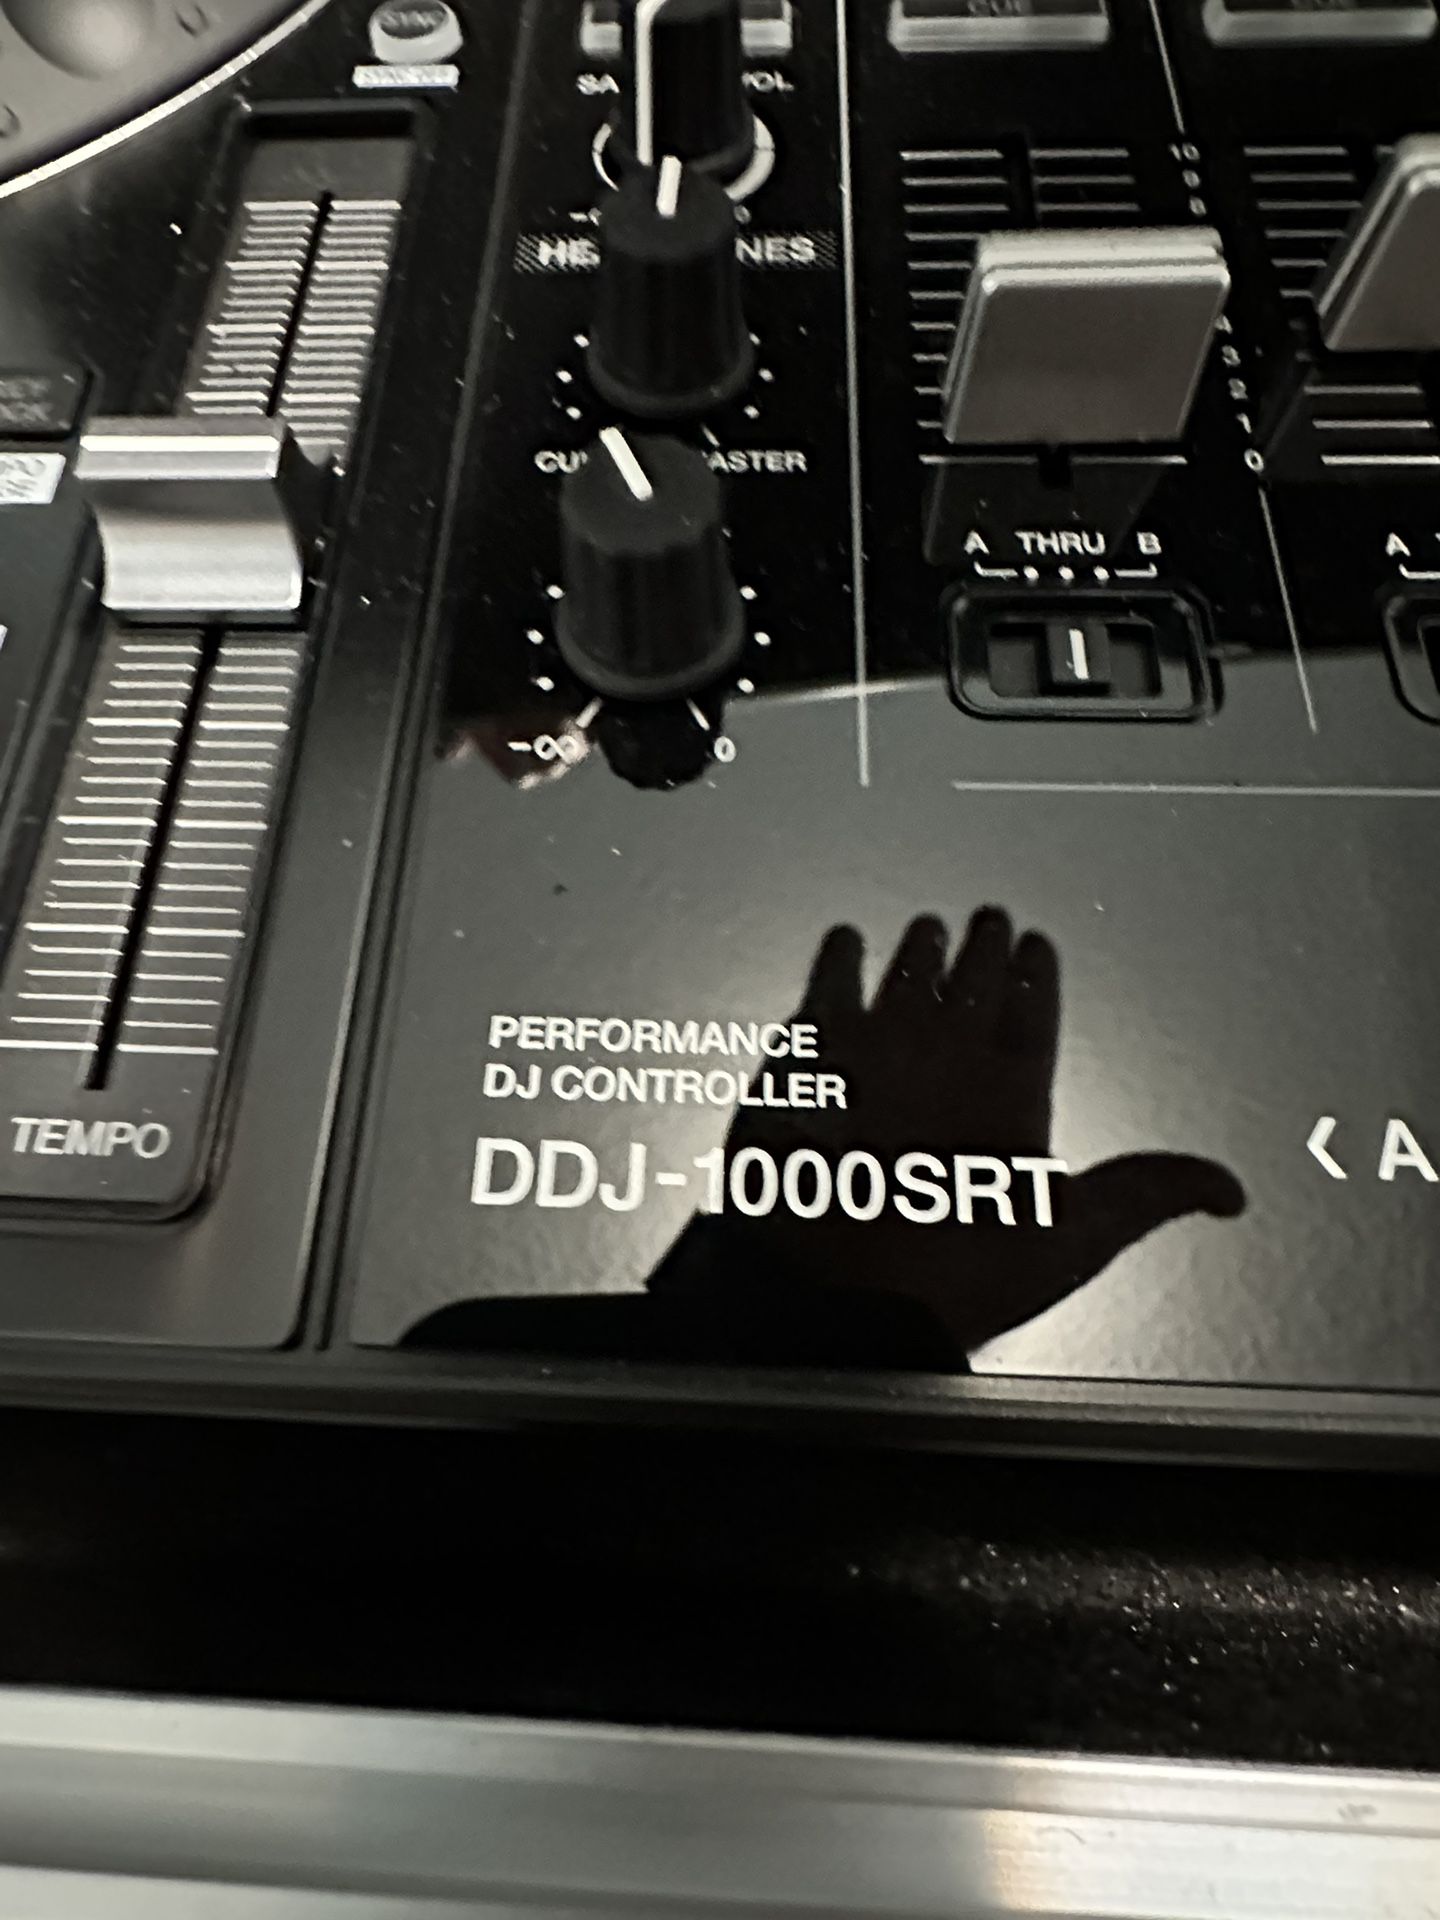 DJ controller 4 